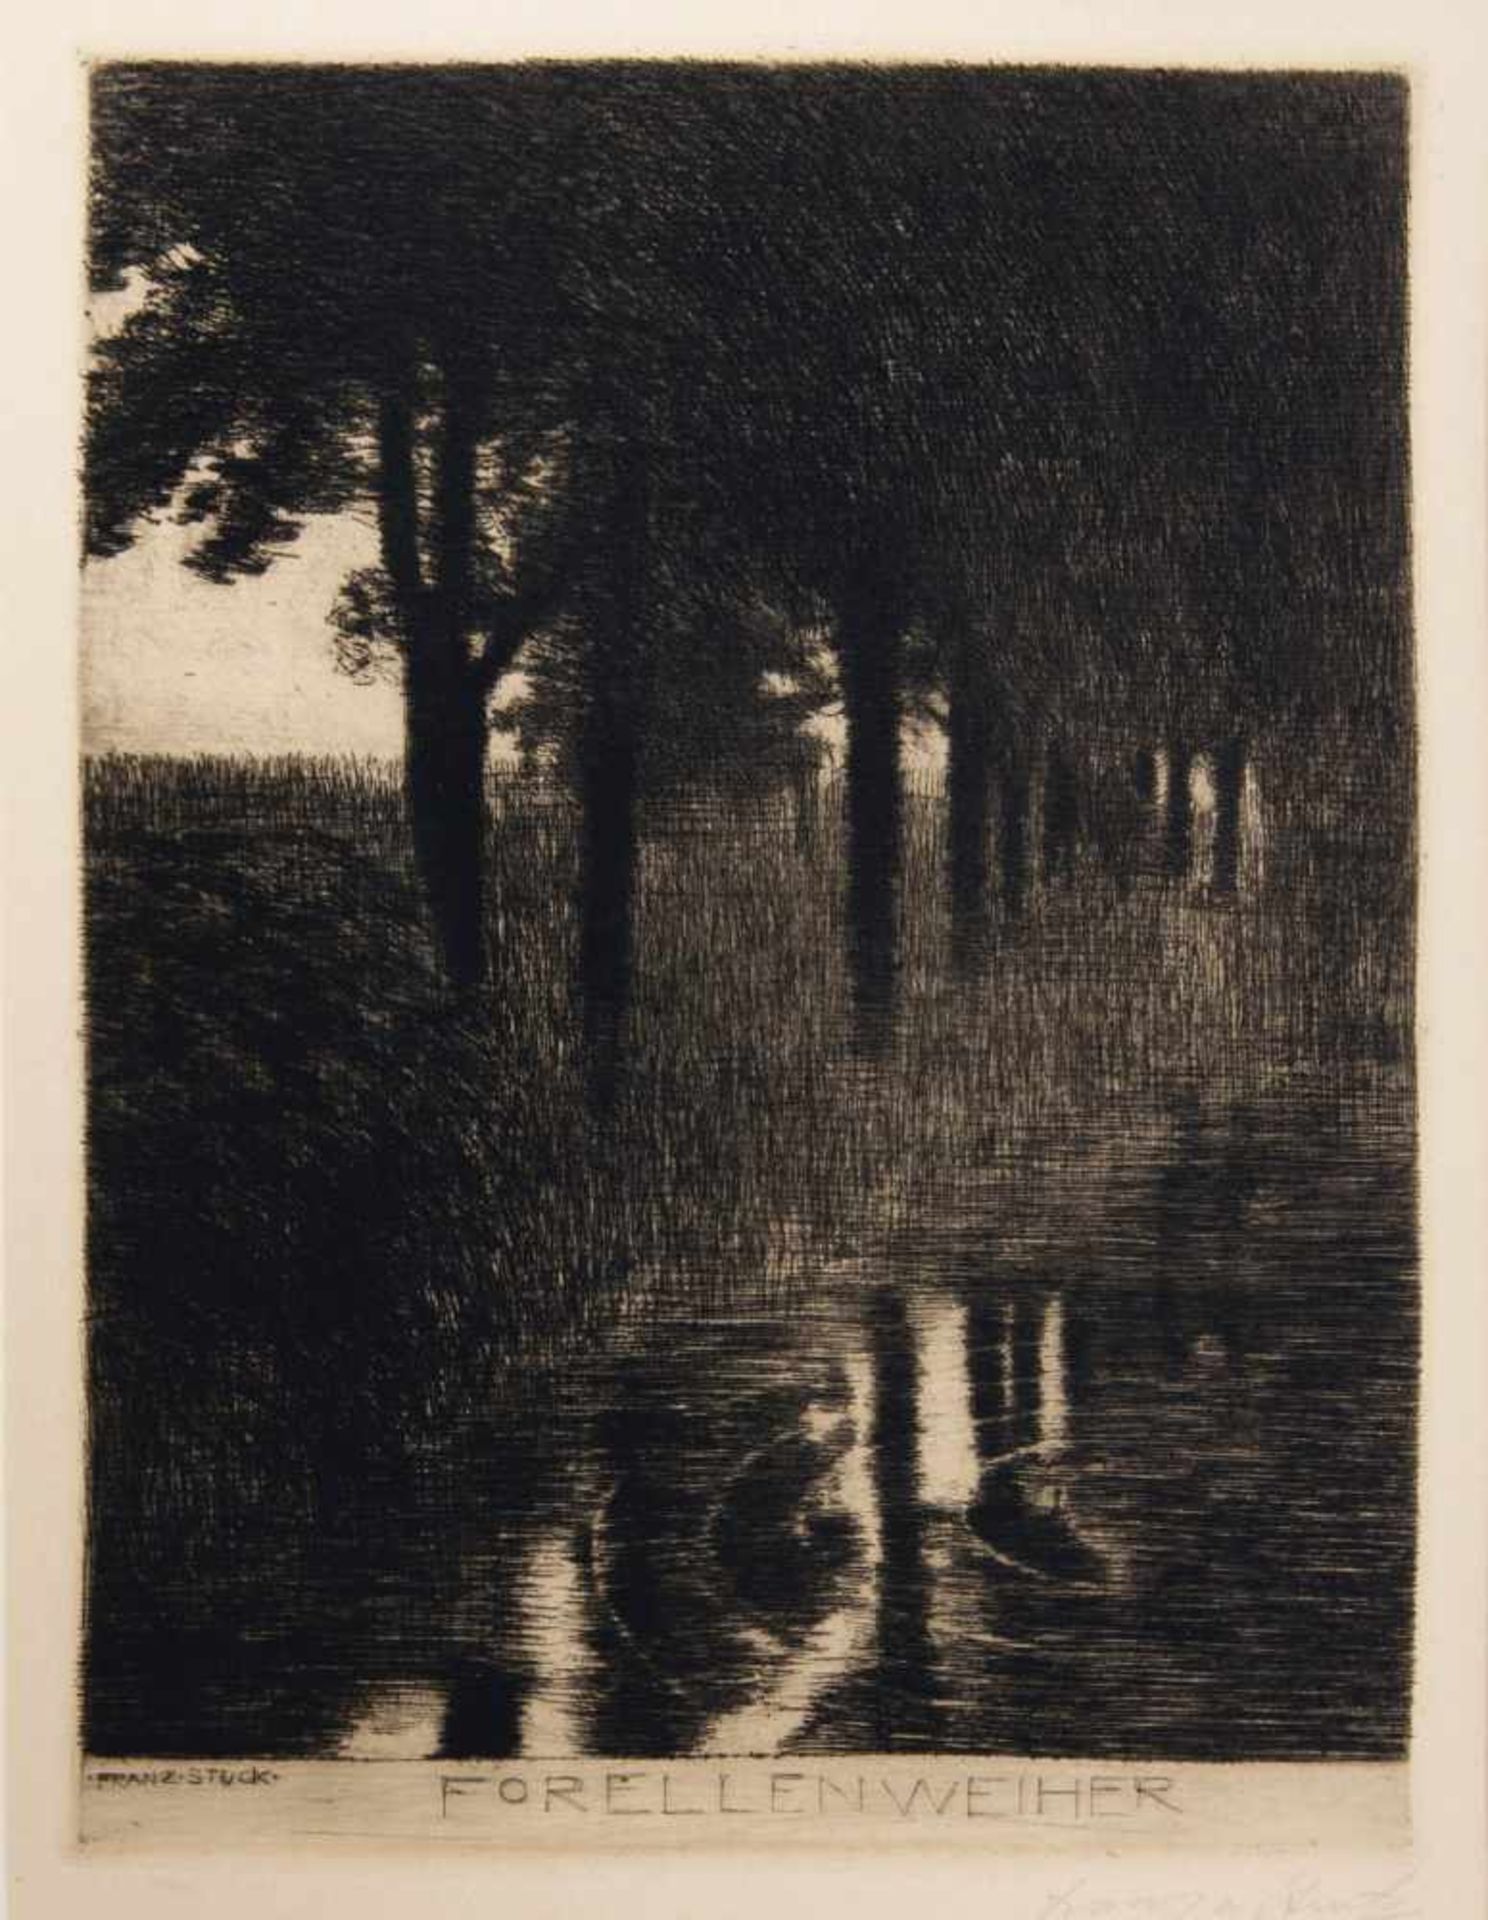 Franz von Stuck, 'Forellenweiher', c. 1890/91'Forellenweiher', c. 1890/9128 x 23.2 cm (plate).